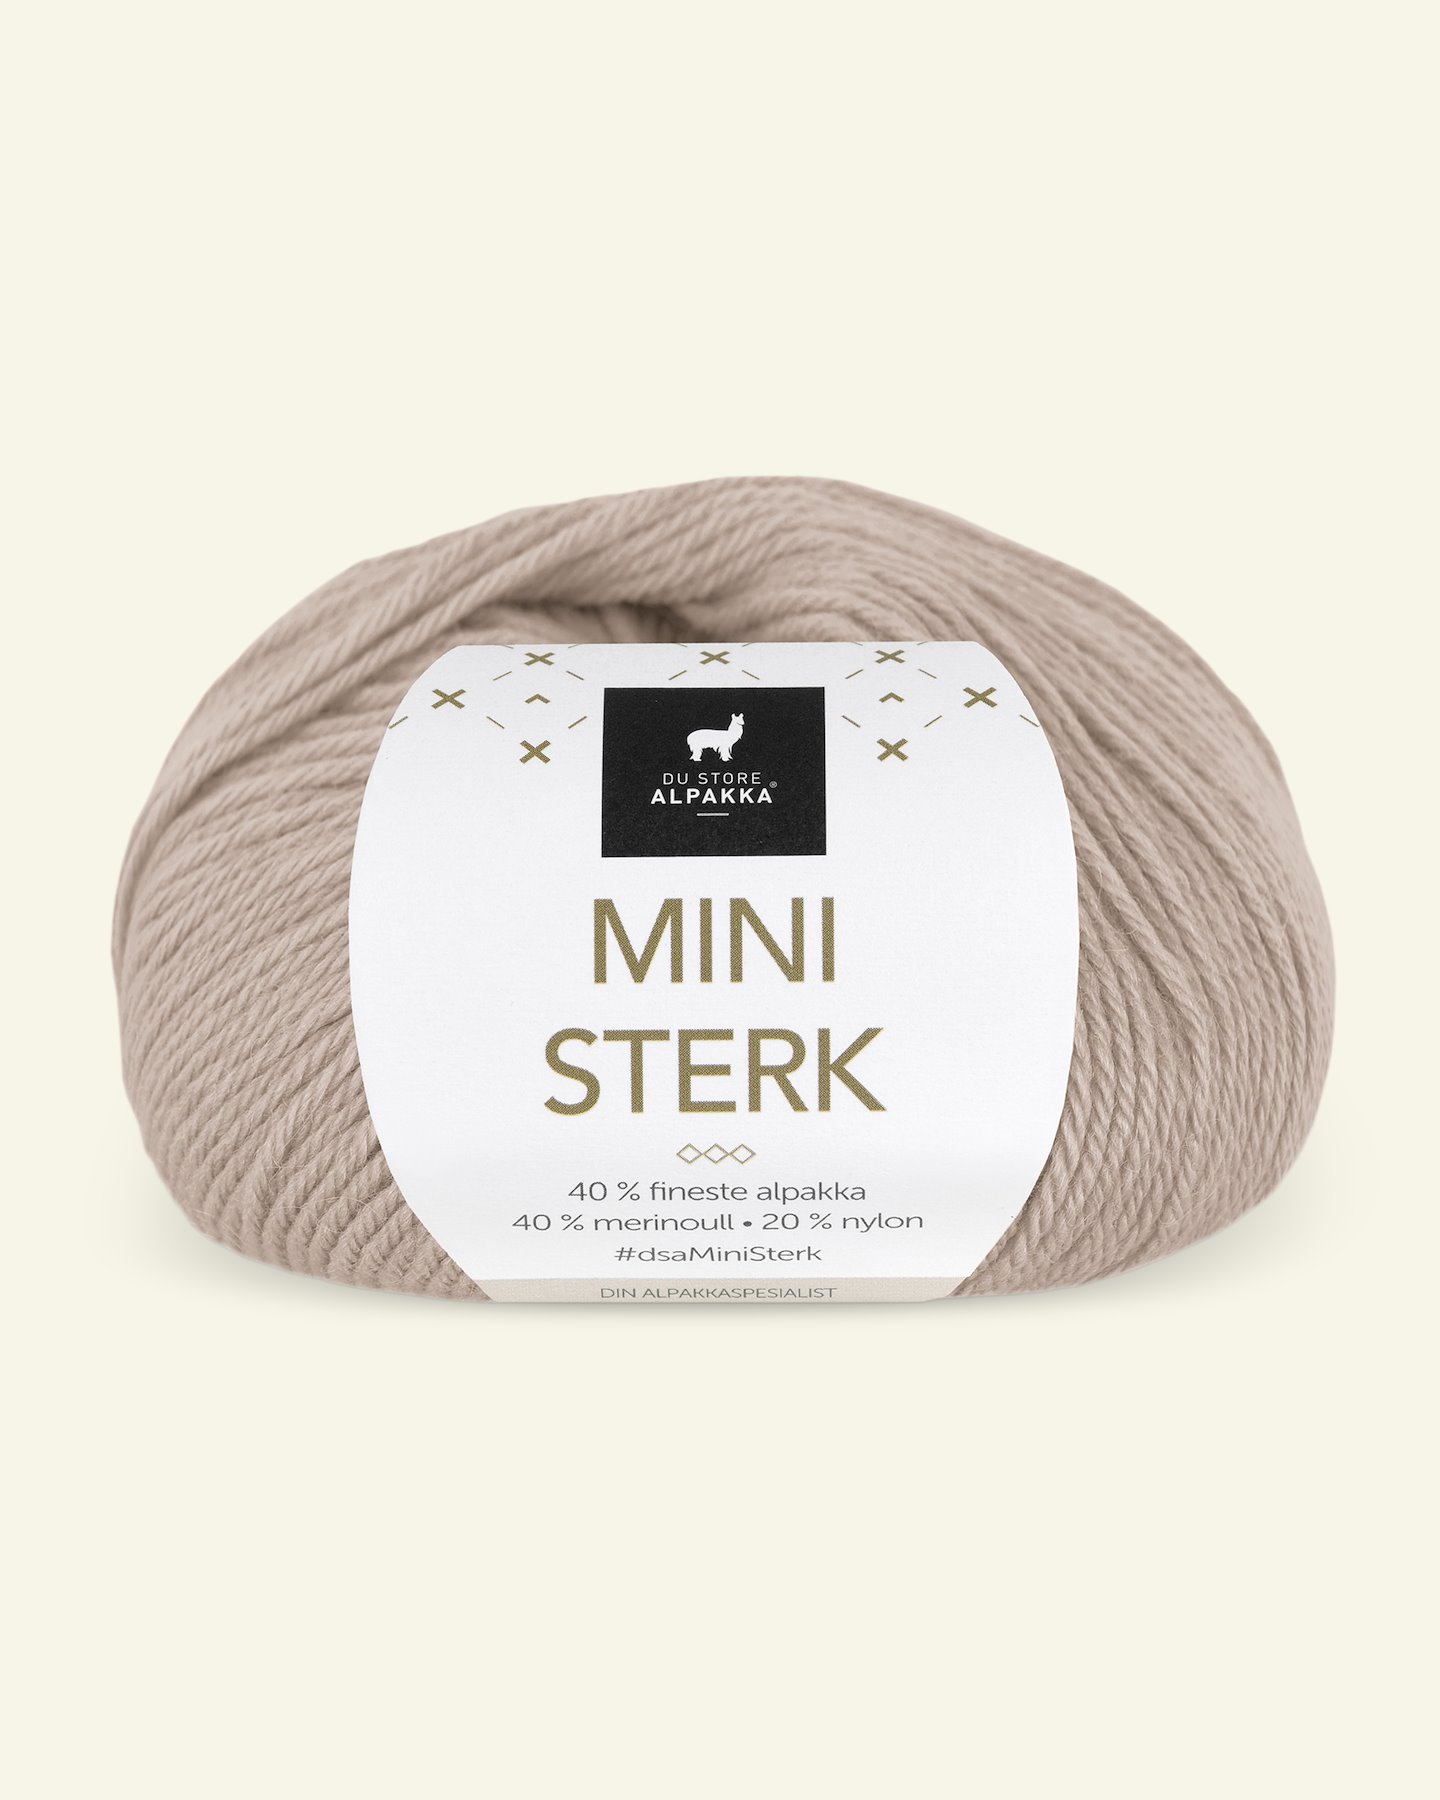 Du Store Alpakka, alpaca merino mixgarn "Mini Sterk", pudder (903) 90000646_pack